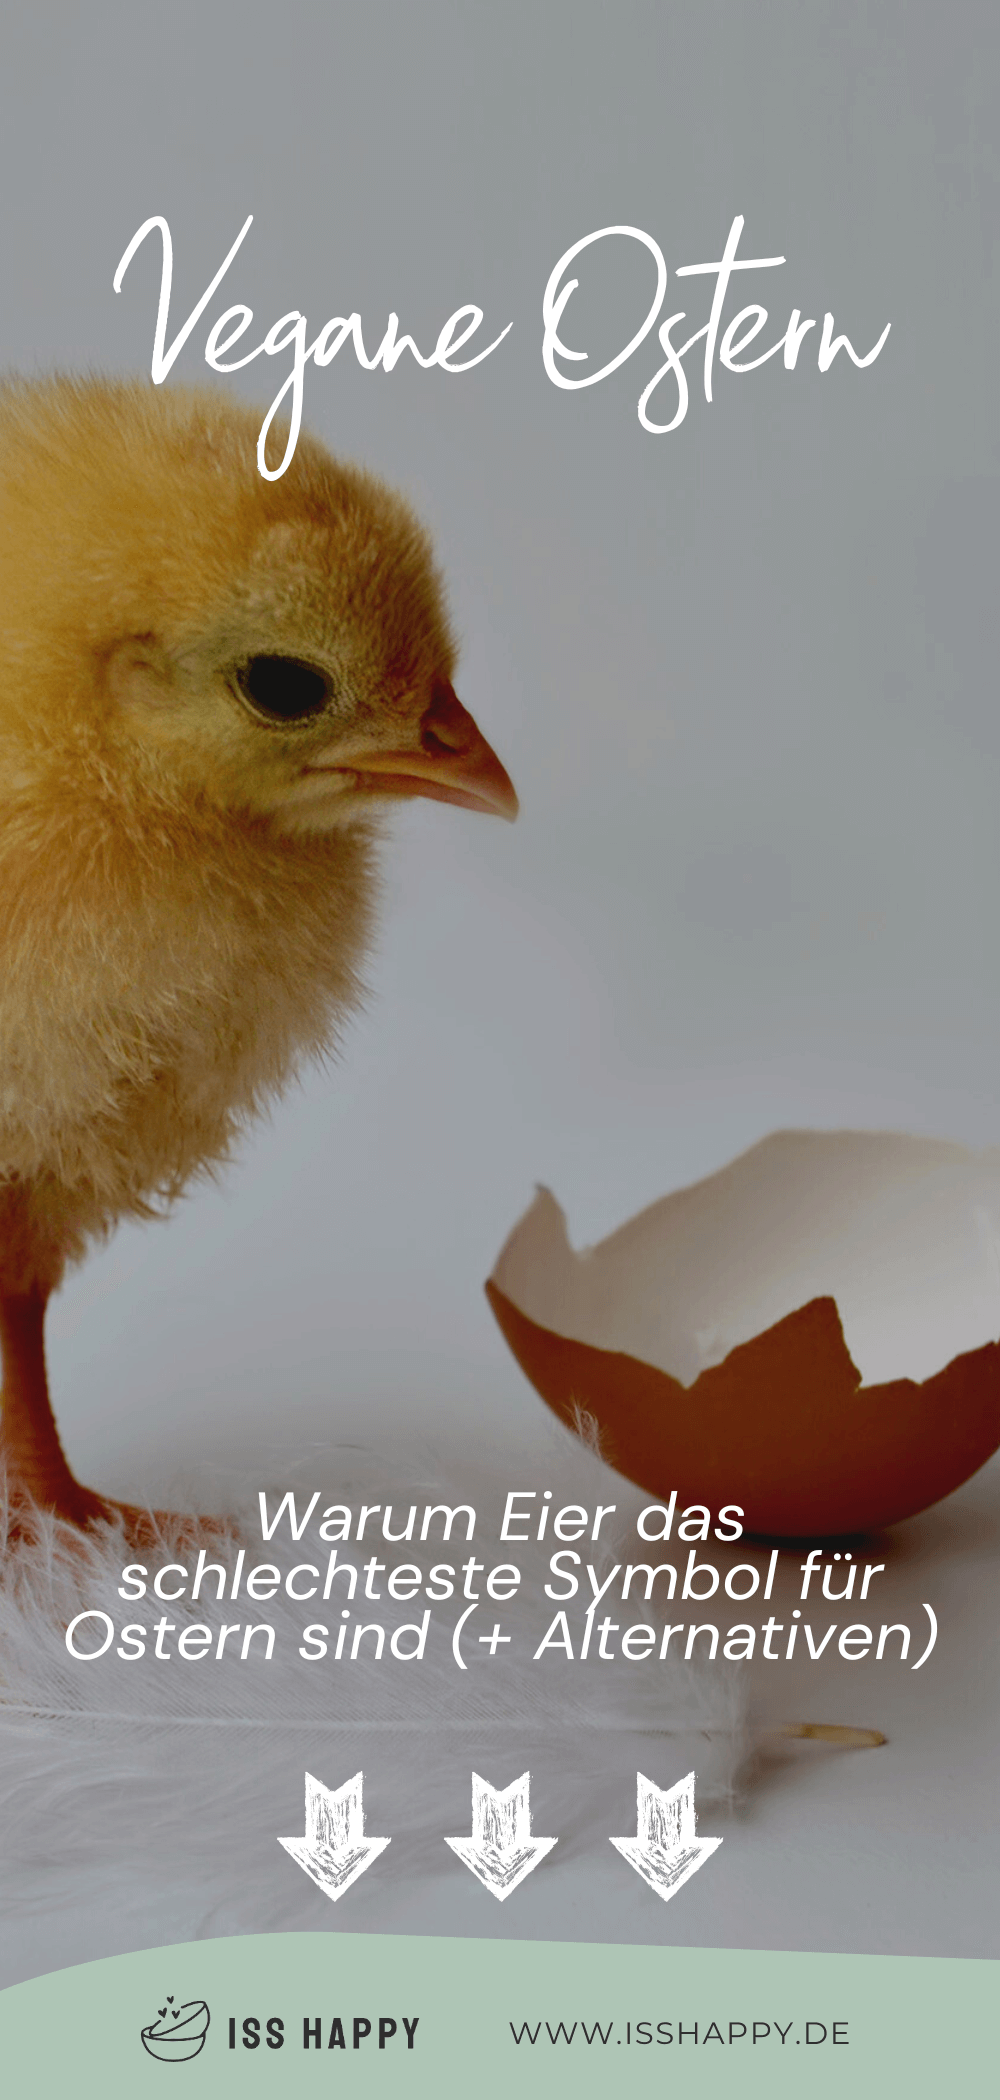 Vegane Ostern ohne Eier – Warum Eier das schlechteste Symbol für Ostern sind (+ Alternativen)